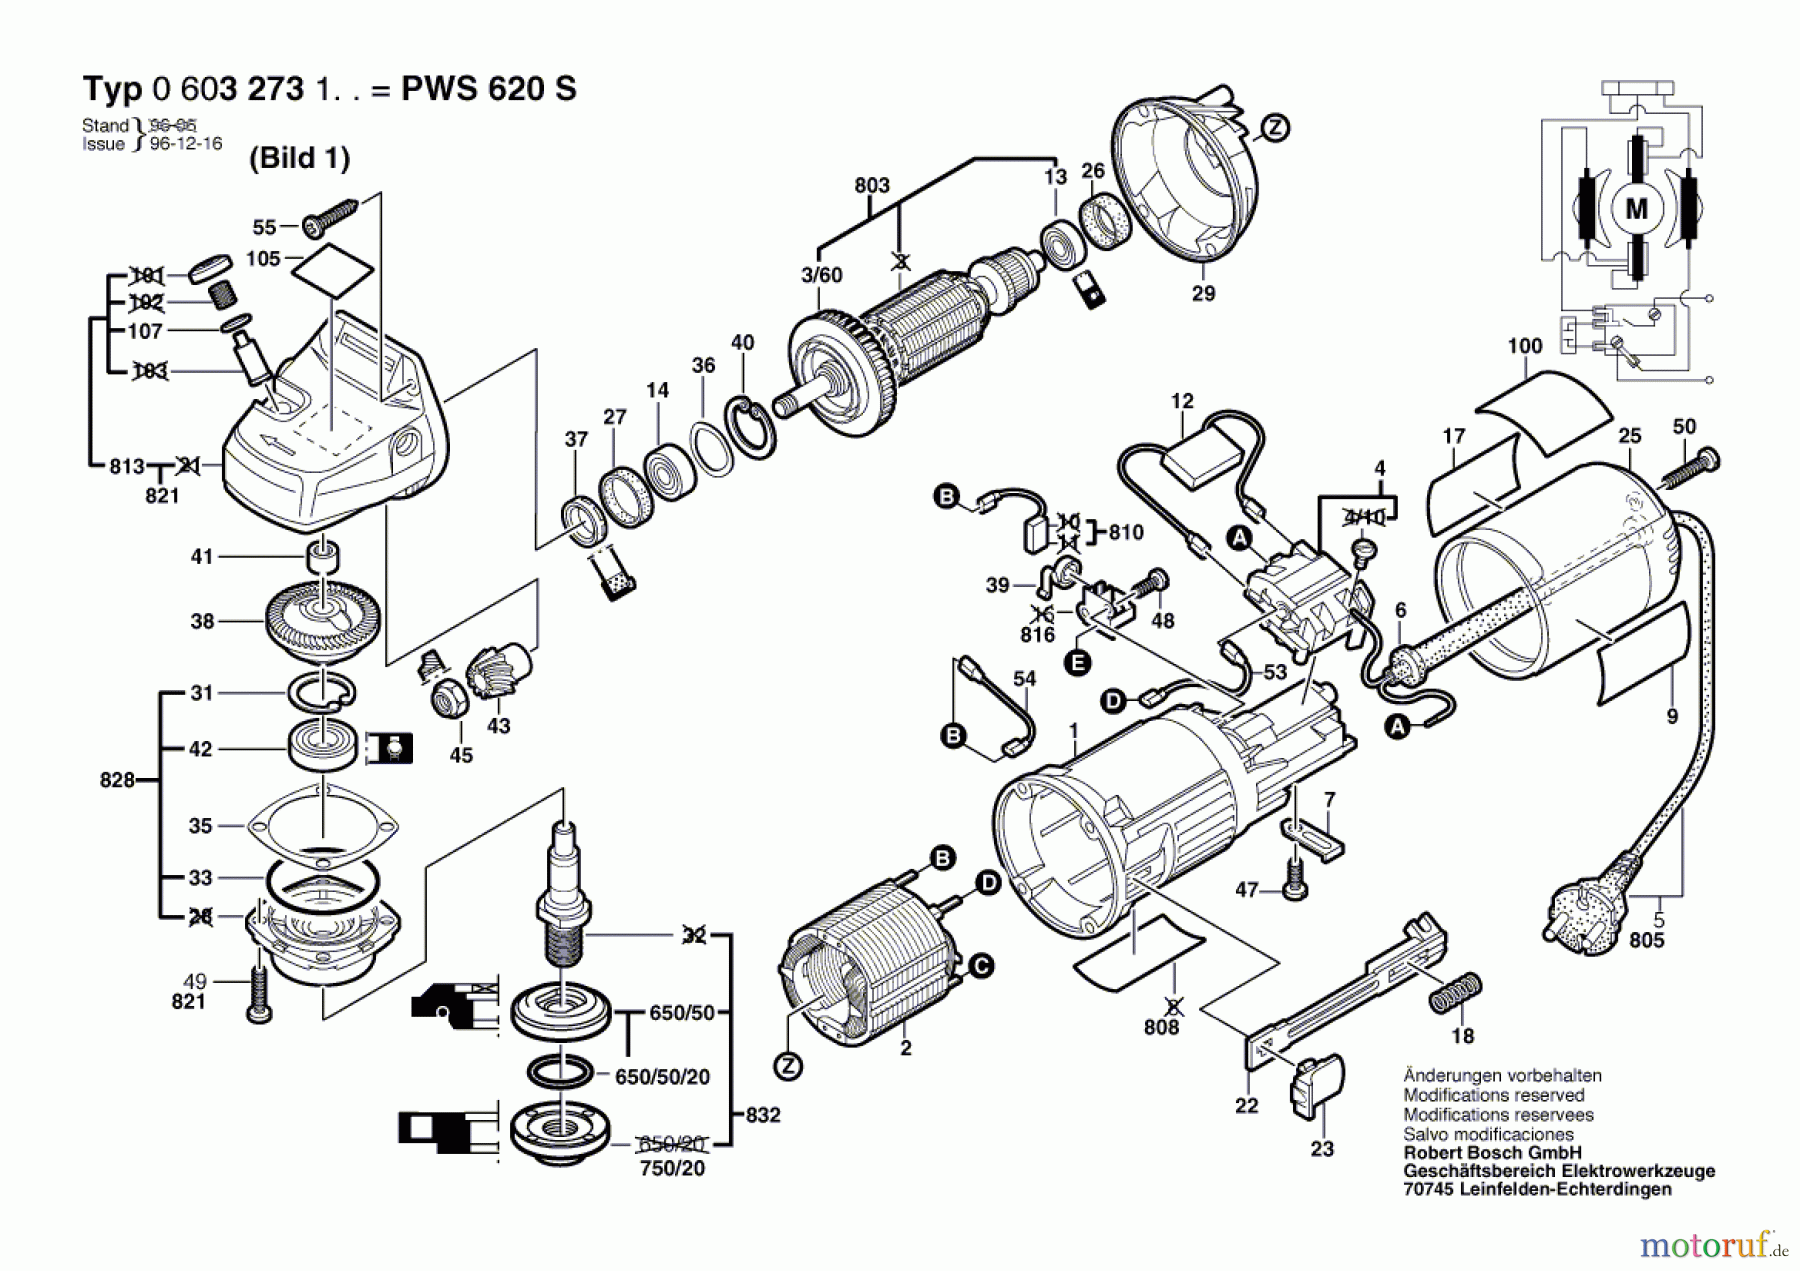  Bosch Werkzeug Winkelschleifer PWS 620 S Seite 1